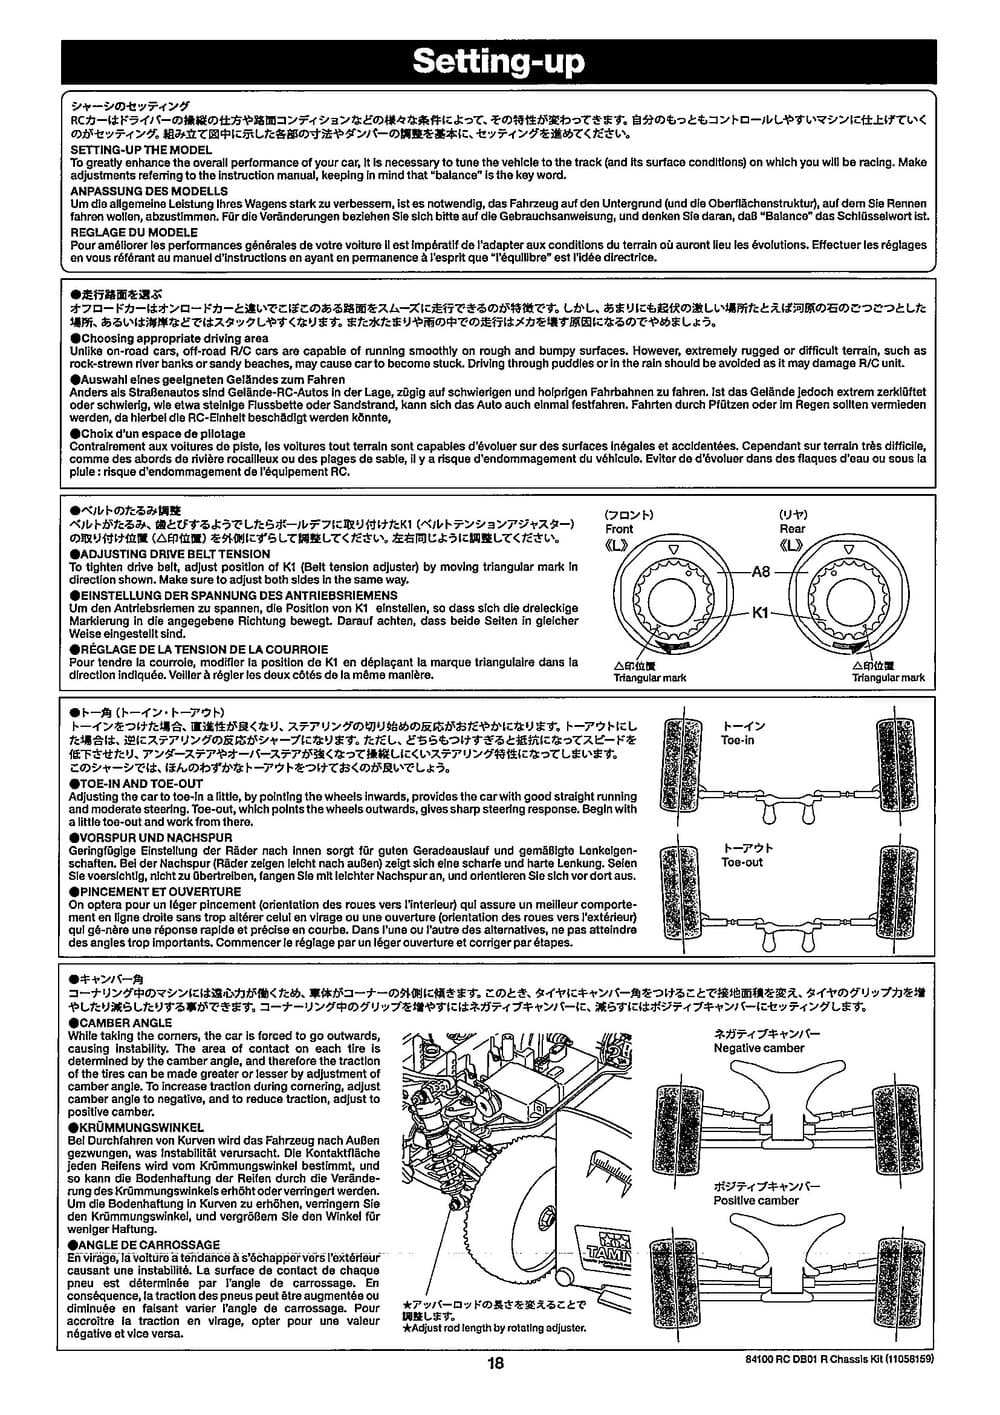 Tamiya - DB-01R Chassis - Manual - Page 18